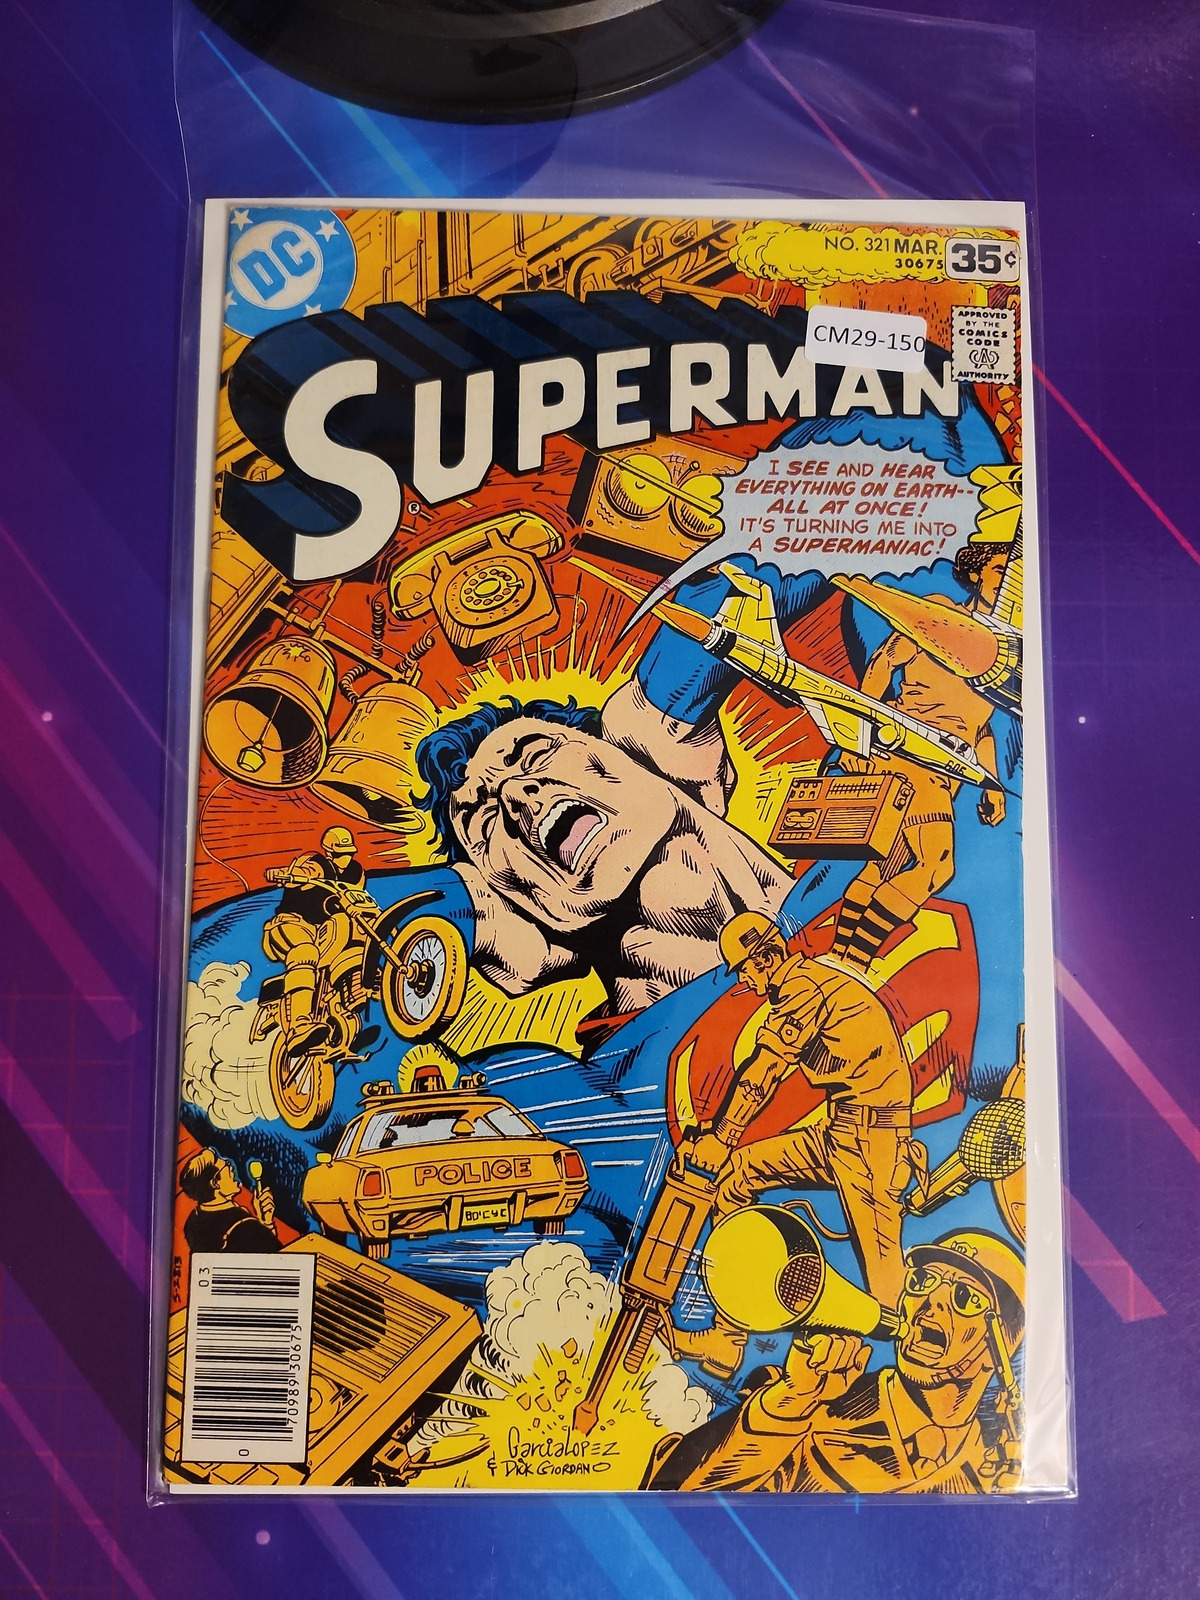 SUPERMAN #321 VOL. 1 HIGH GRADE NEWSSTAND DC COMIC BOOK CM29-150